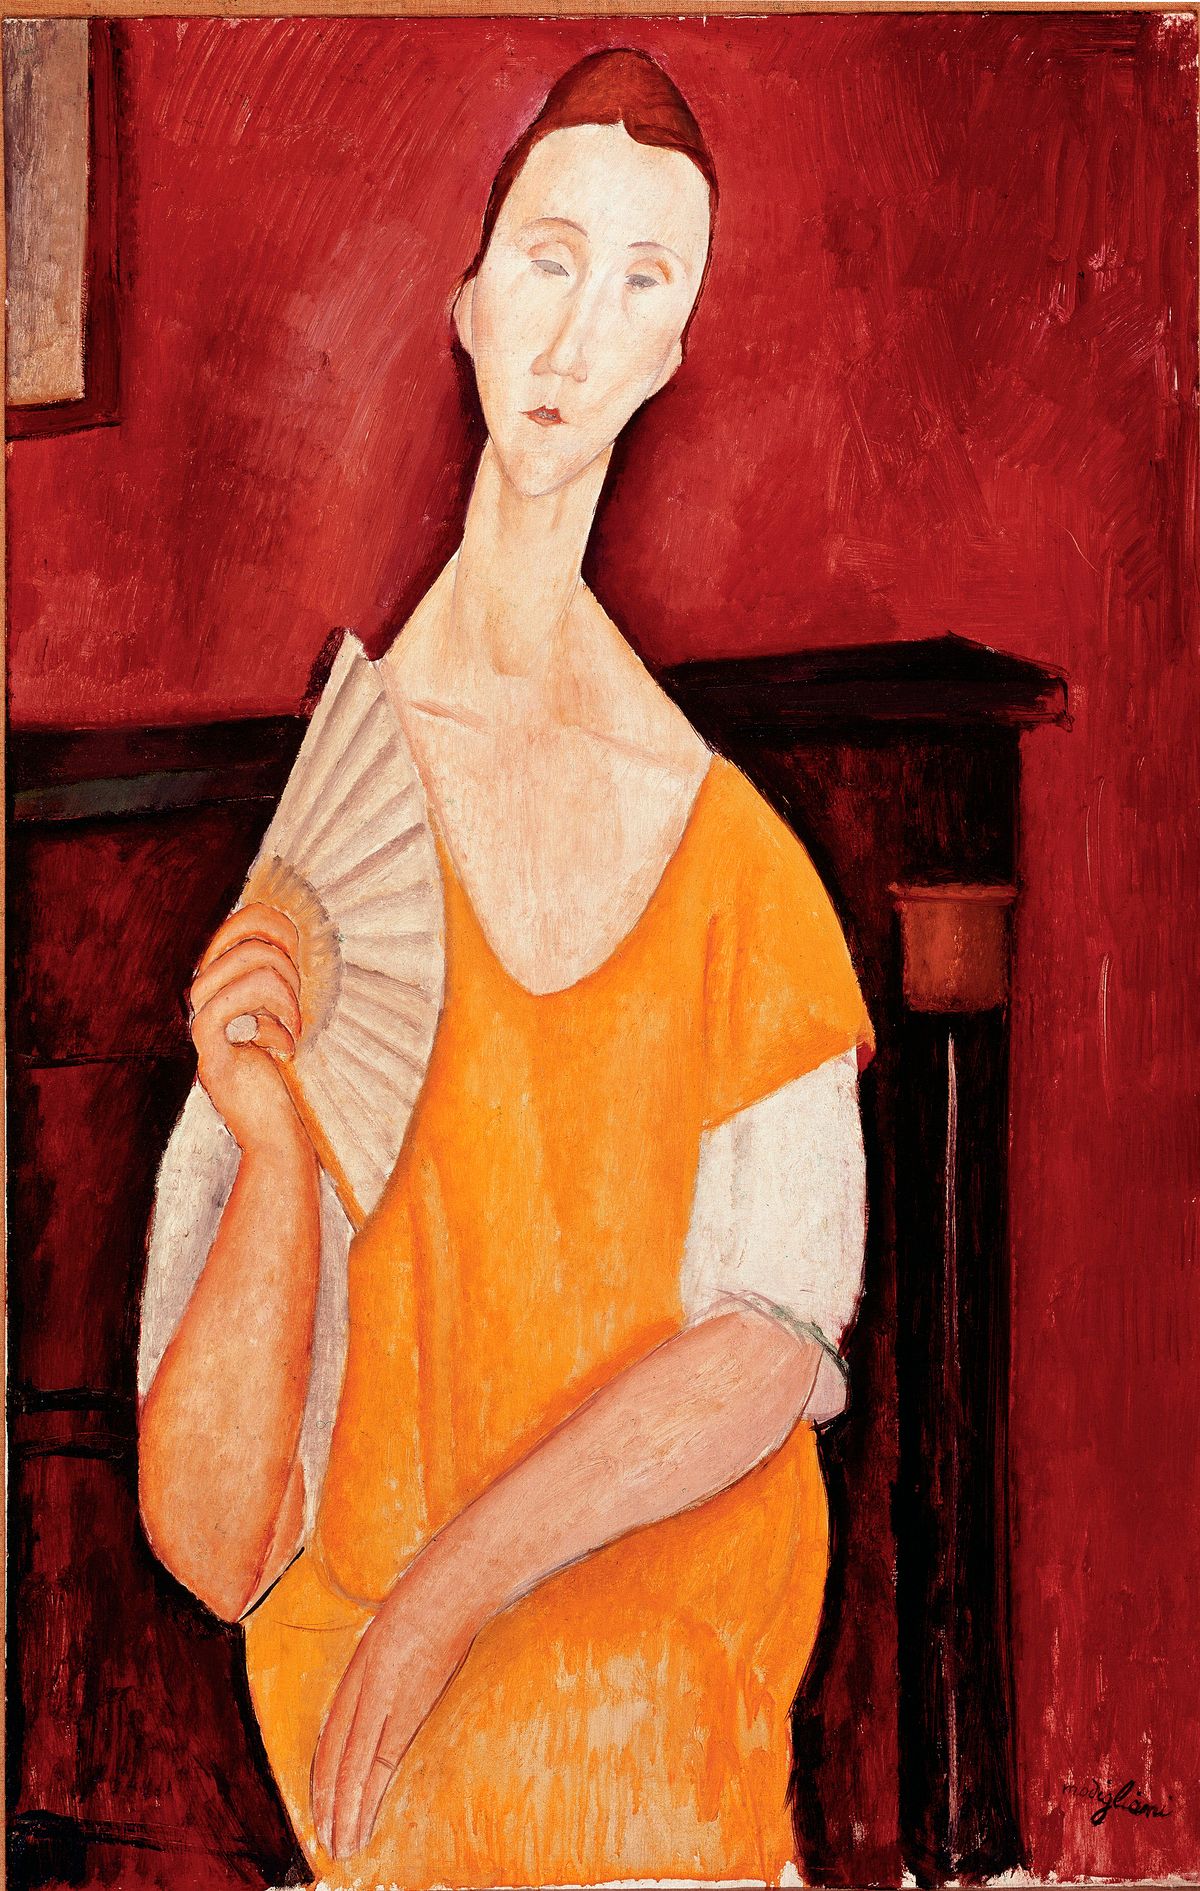 Műkincsrablások, amelyek megrázták a világot, műkincs, rablás, műkincsrablásokavilágban, Modigliani’s Woman With a Fan, festmény lopás